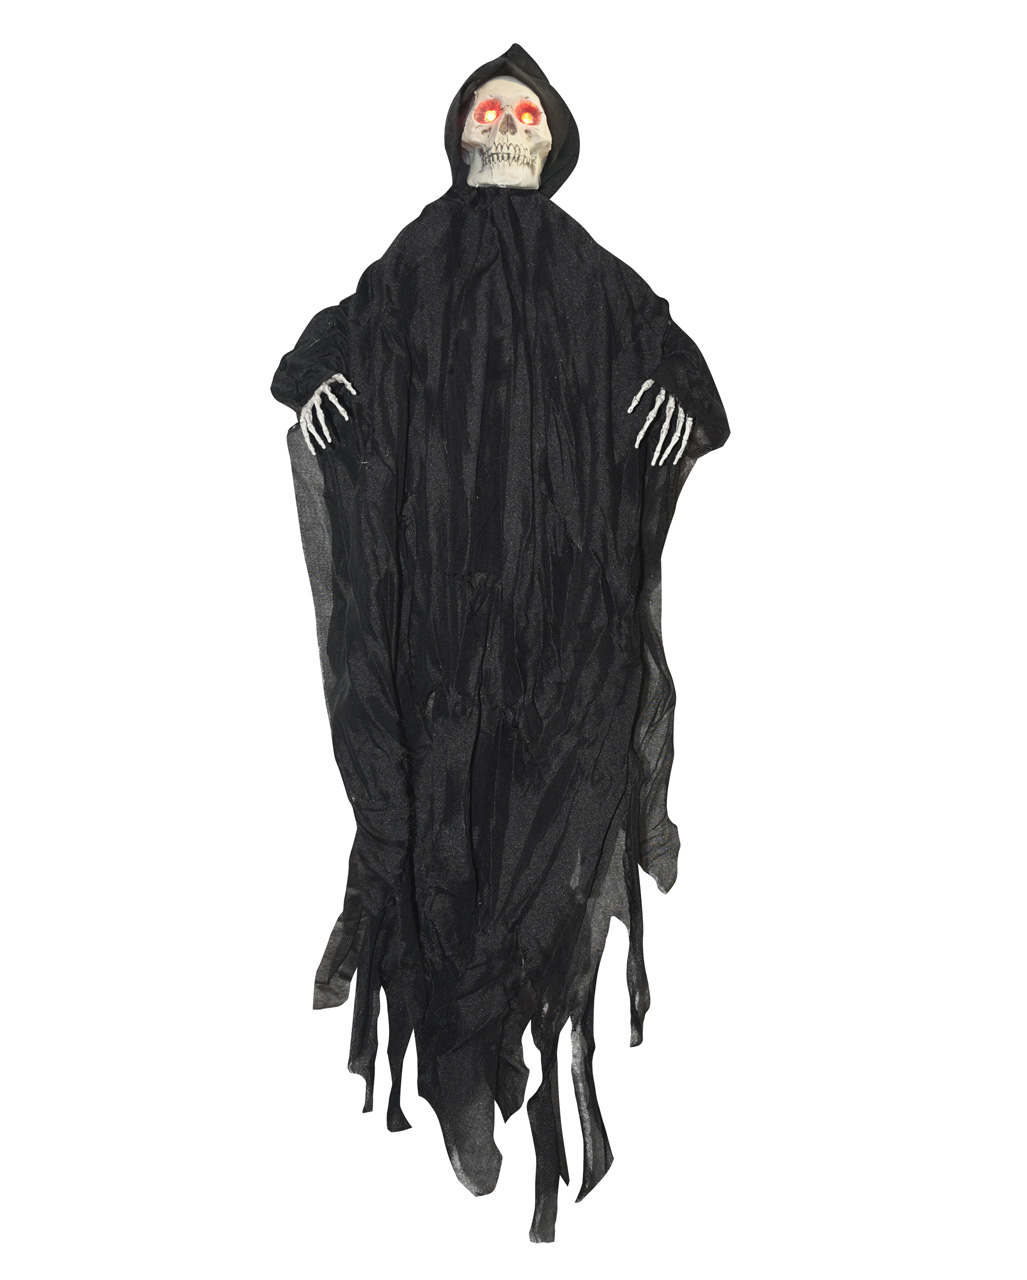 Black Grim Reaper Hanging Figure With LED Eyes | horror-shop.com